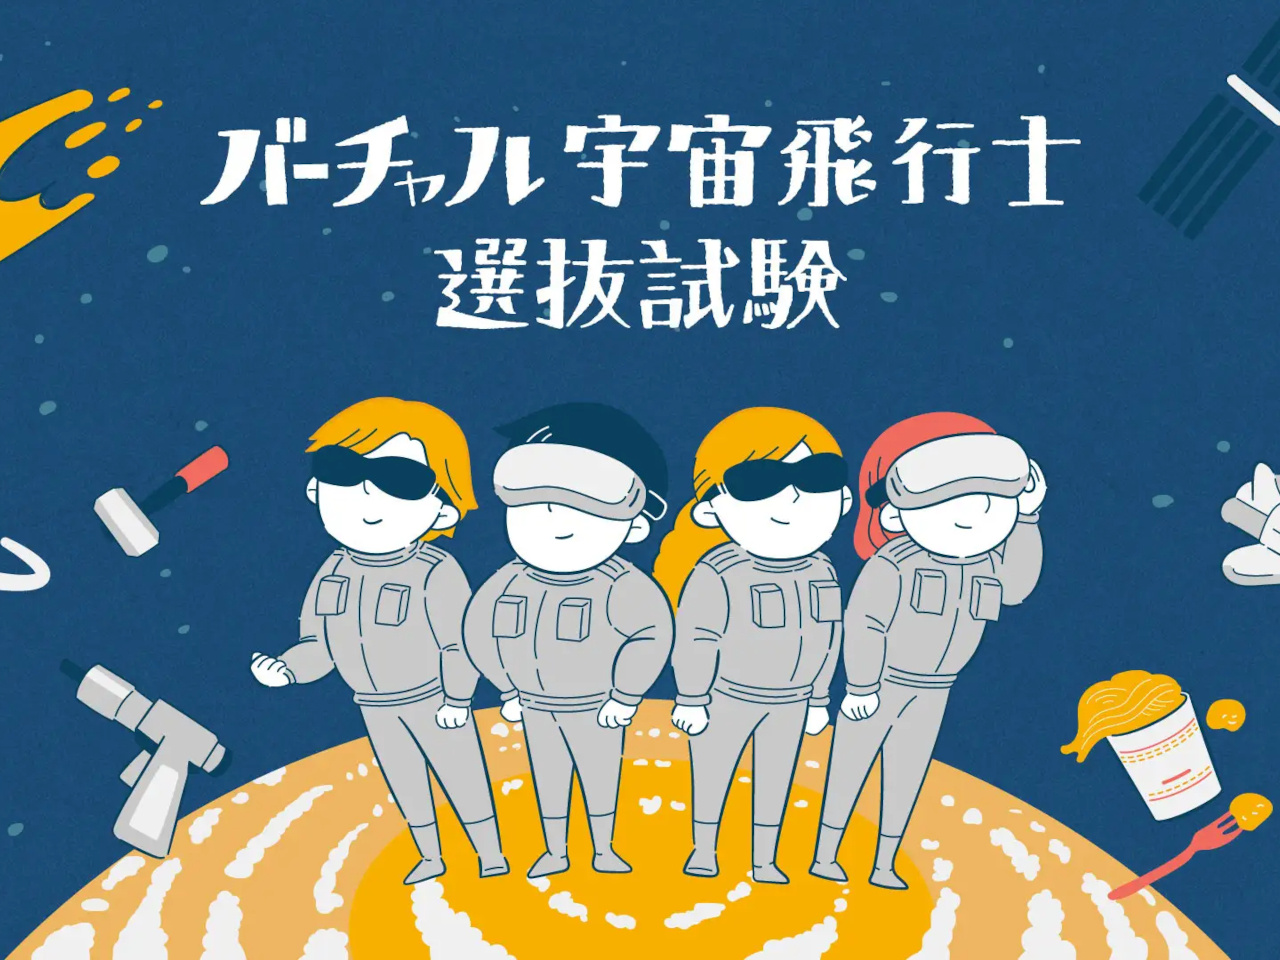 宇都宮で小学生向けイベント「バーチャル宇宙飛行士選抜試験」開催